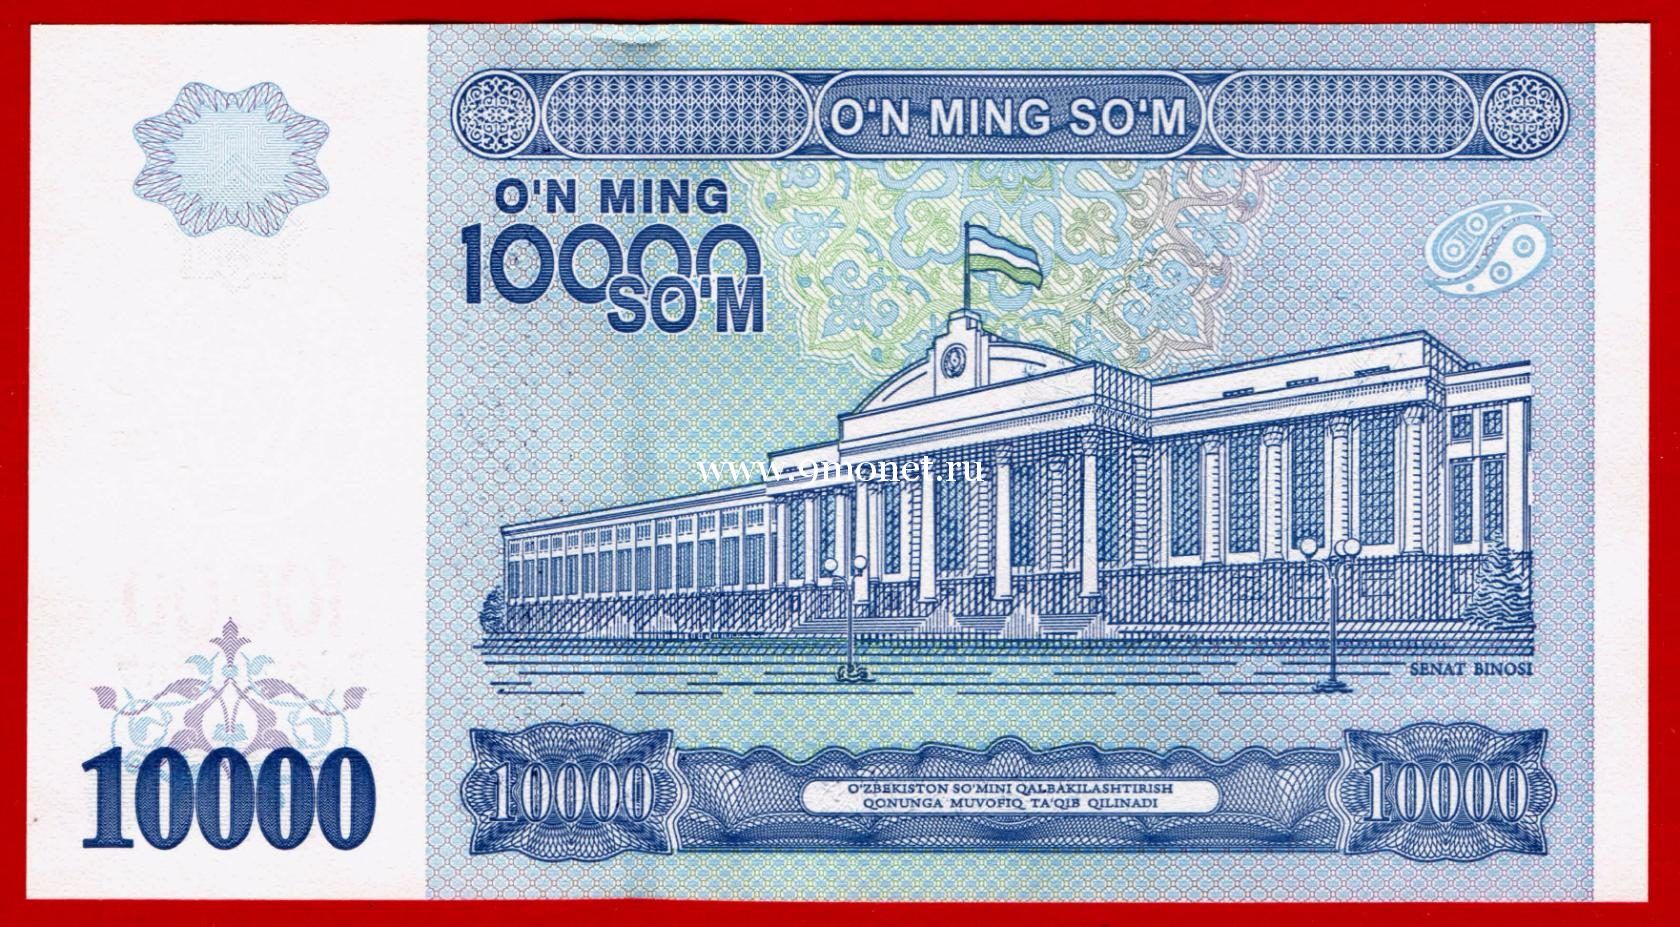 2017 год. Узбекистан банкнота 10000 сум. UNC